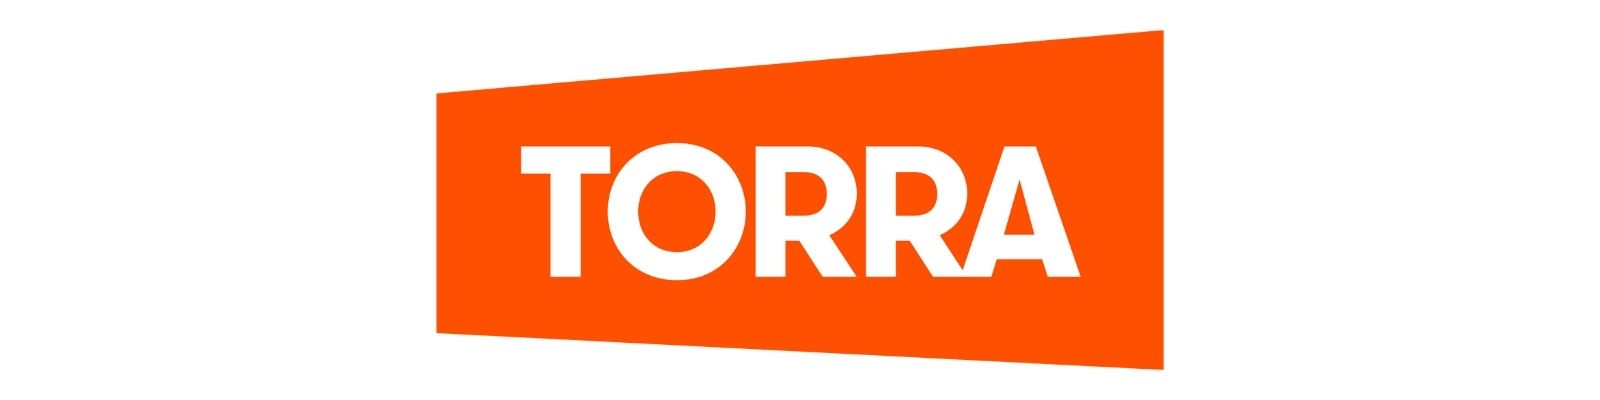 O que precisa para fazer o cartão do Torra Torra?